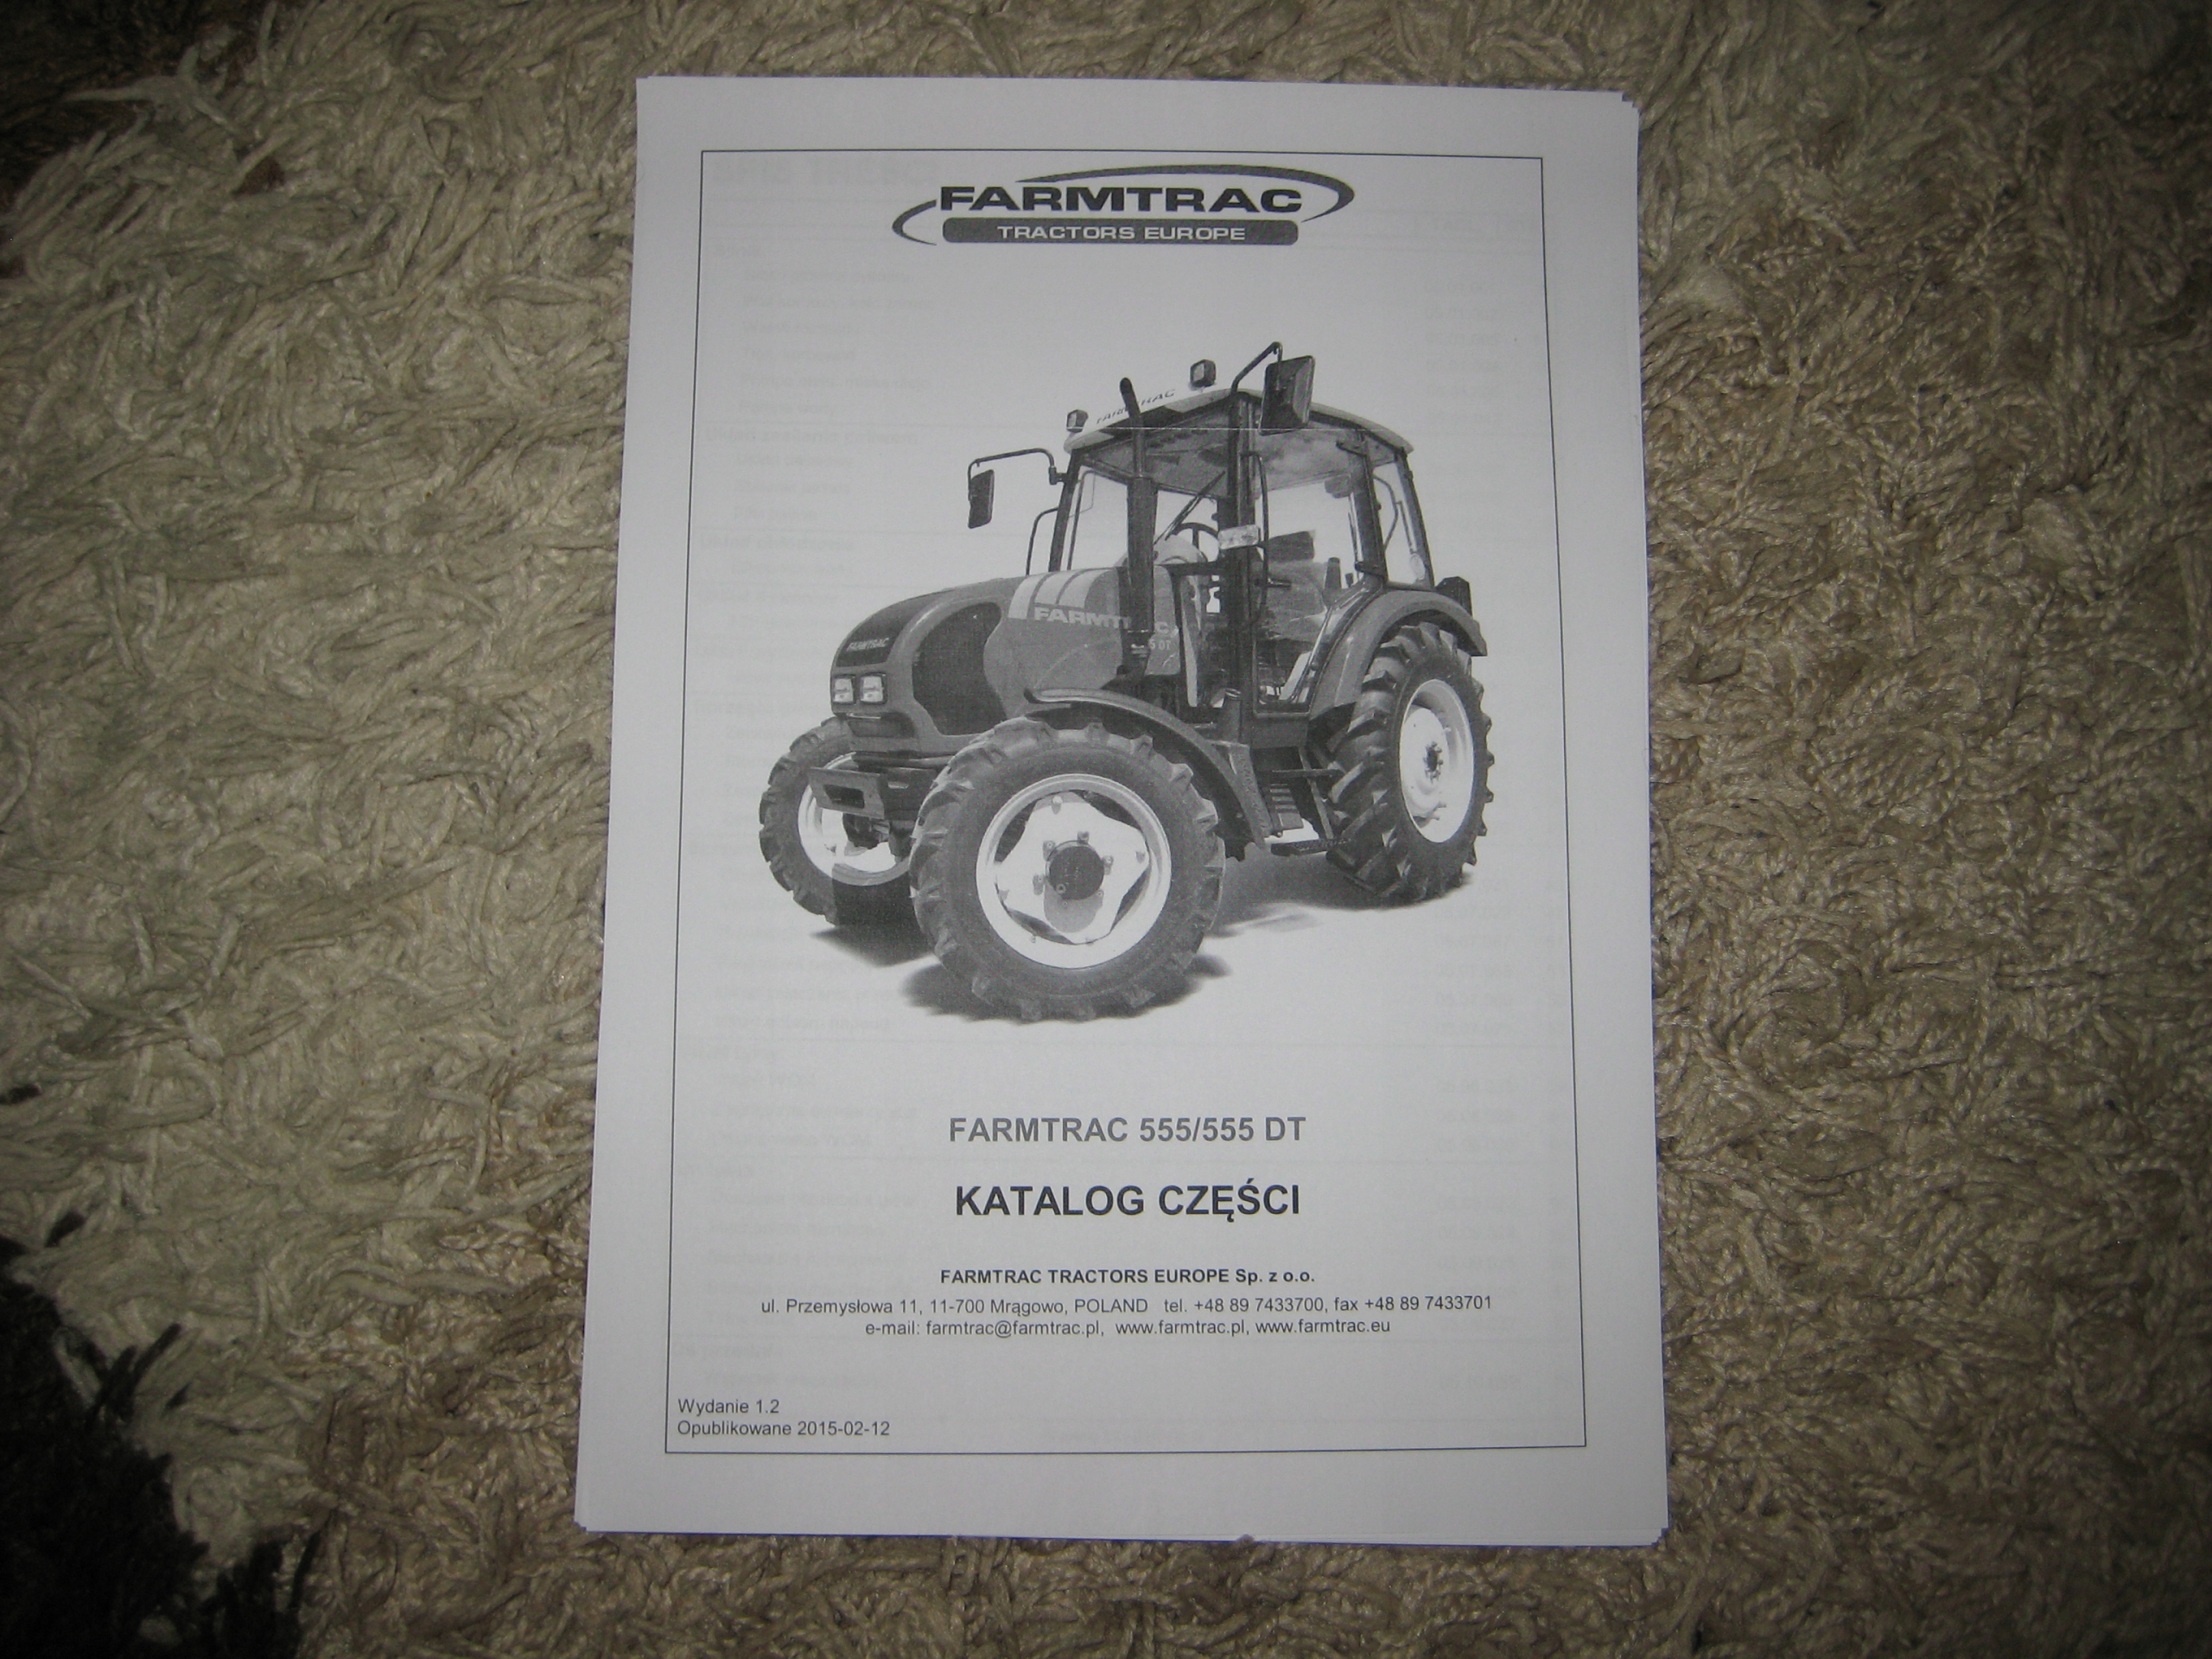 Farmtrac 555 / 555Dt Katalog Części 194 Strony Za 99 Zł Z Hajnówka - Allegro.pl - (11223916199)